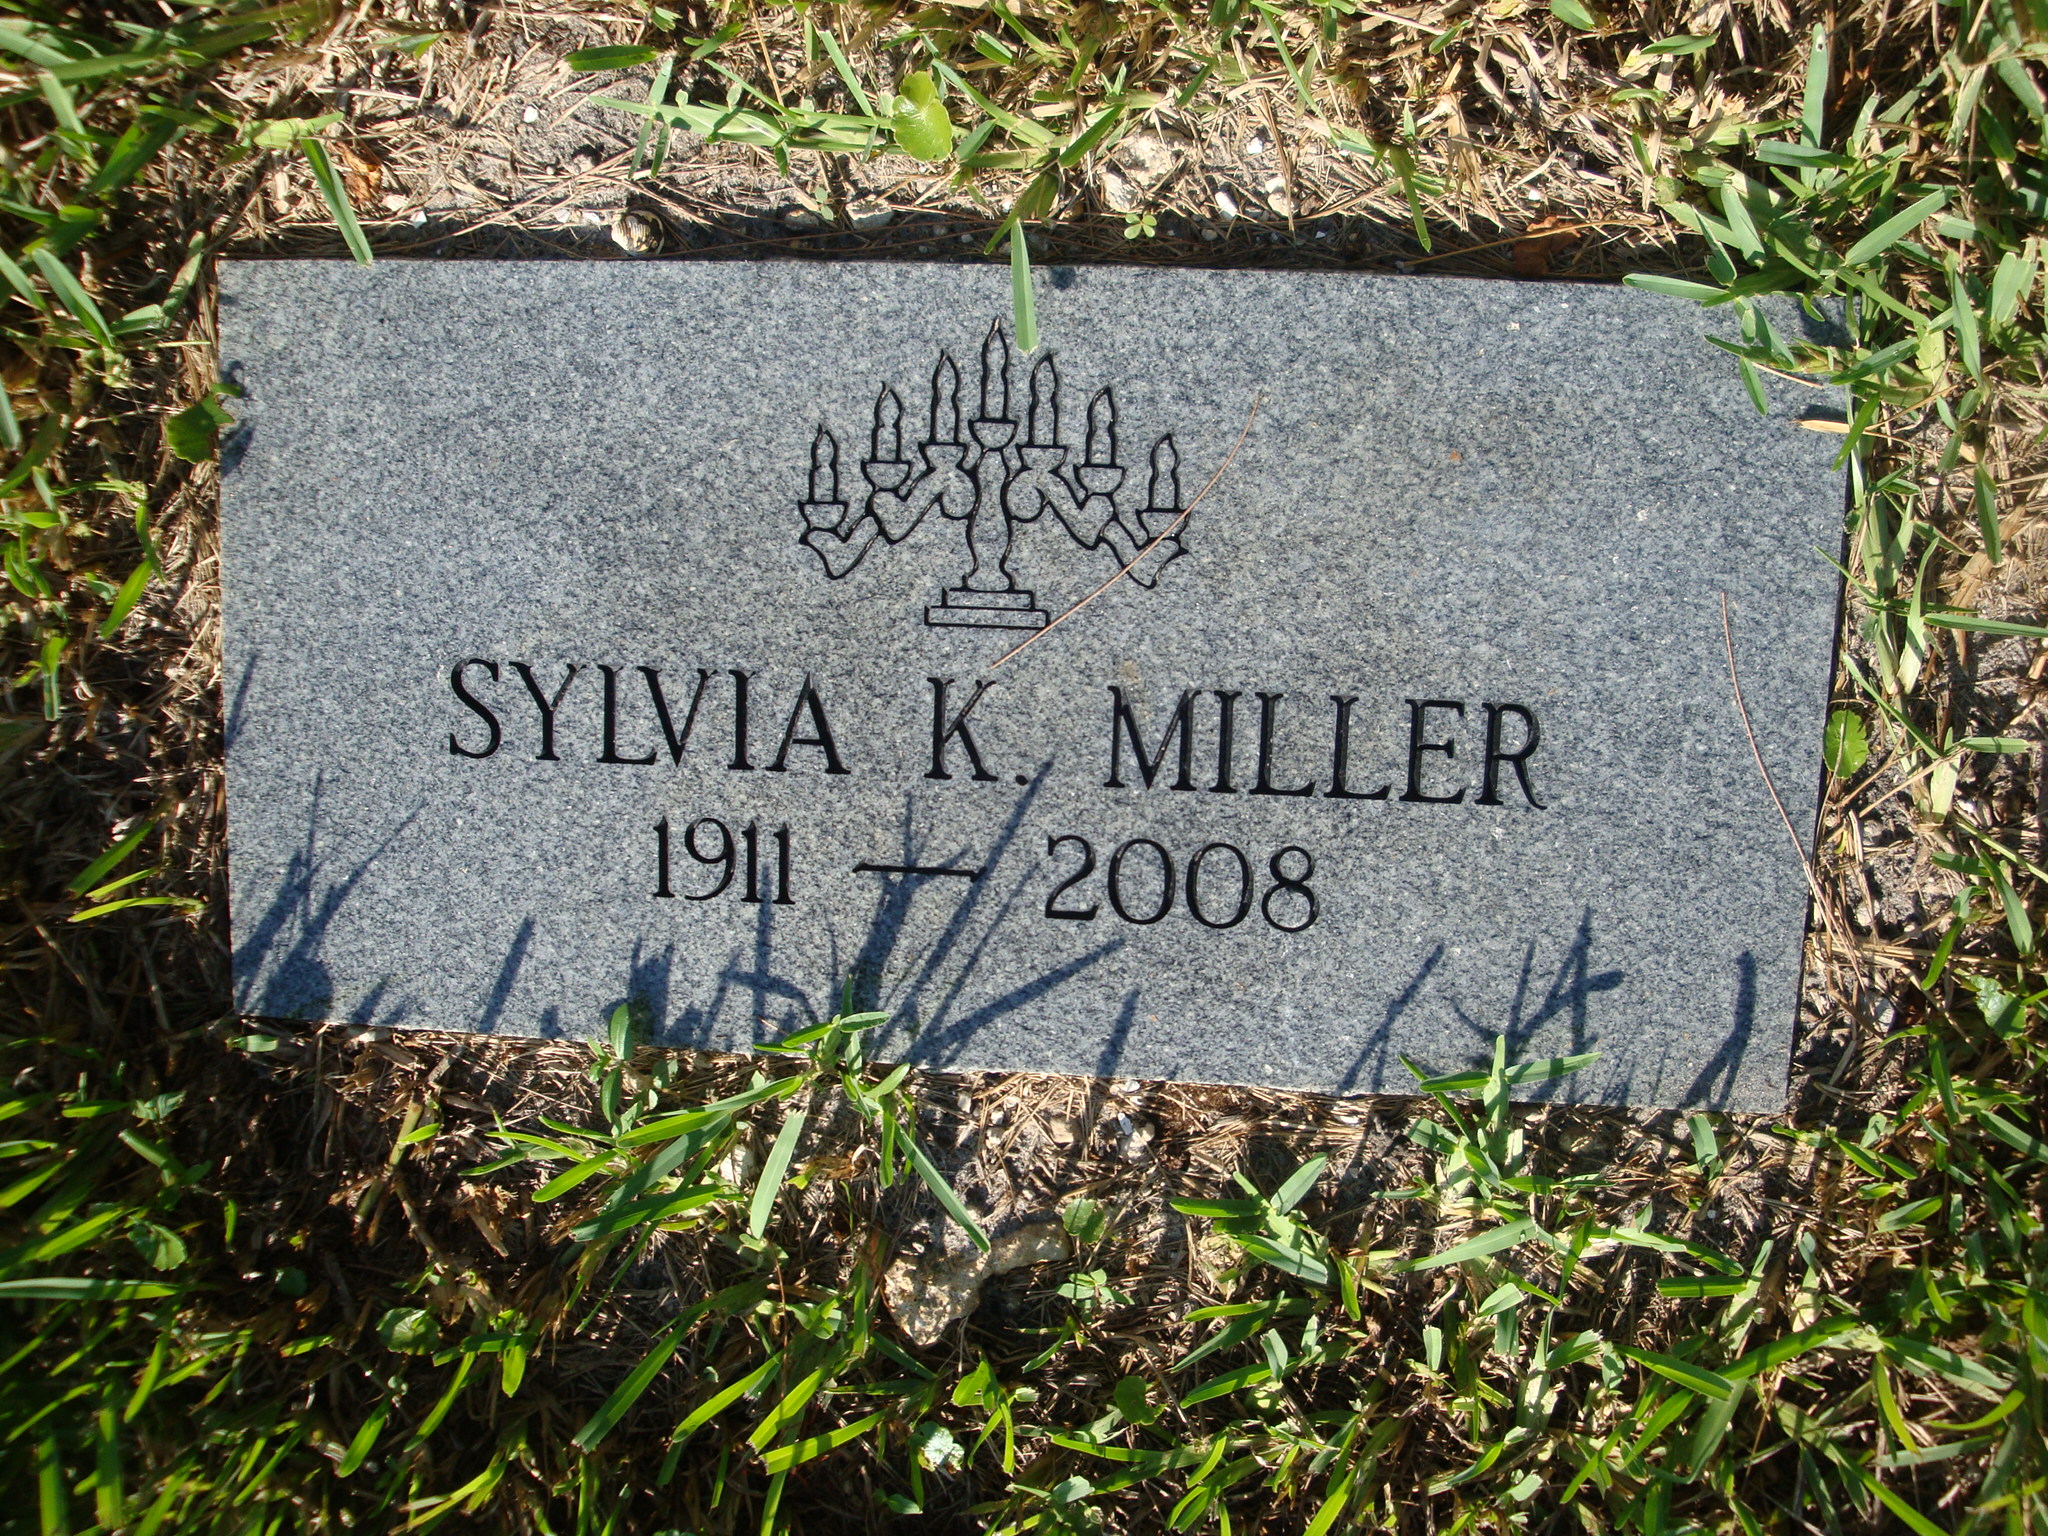 Sylvia K Miller